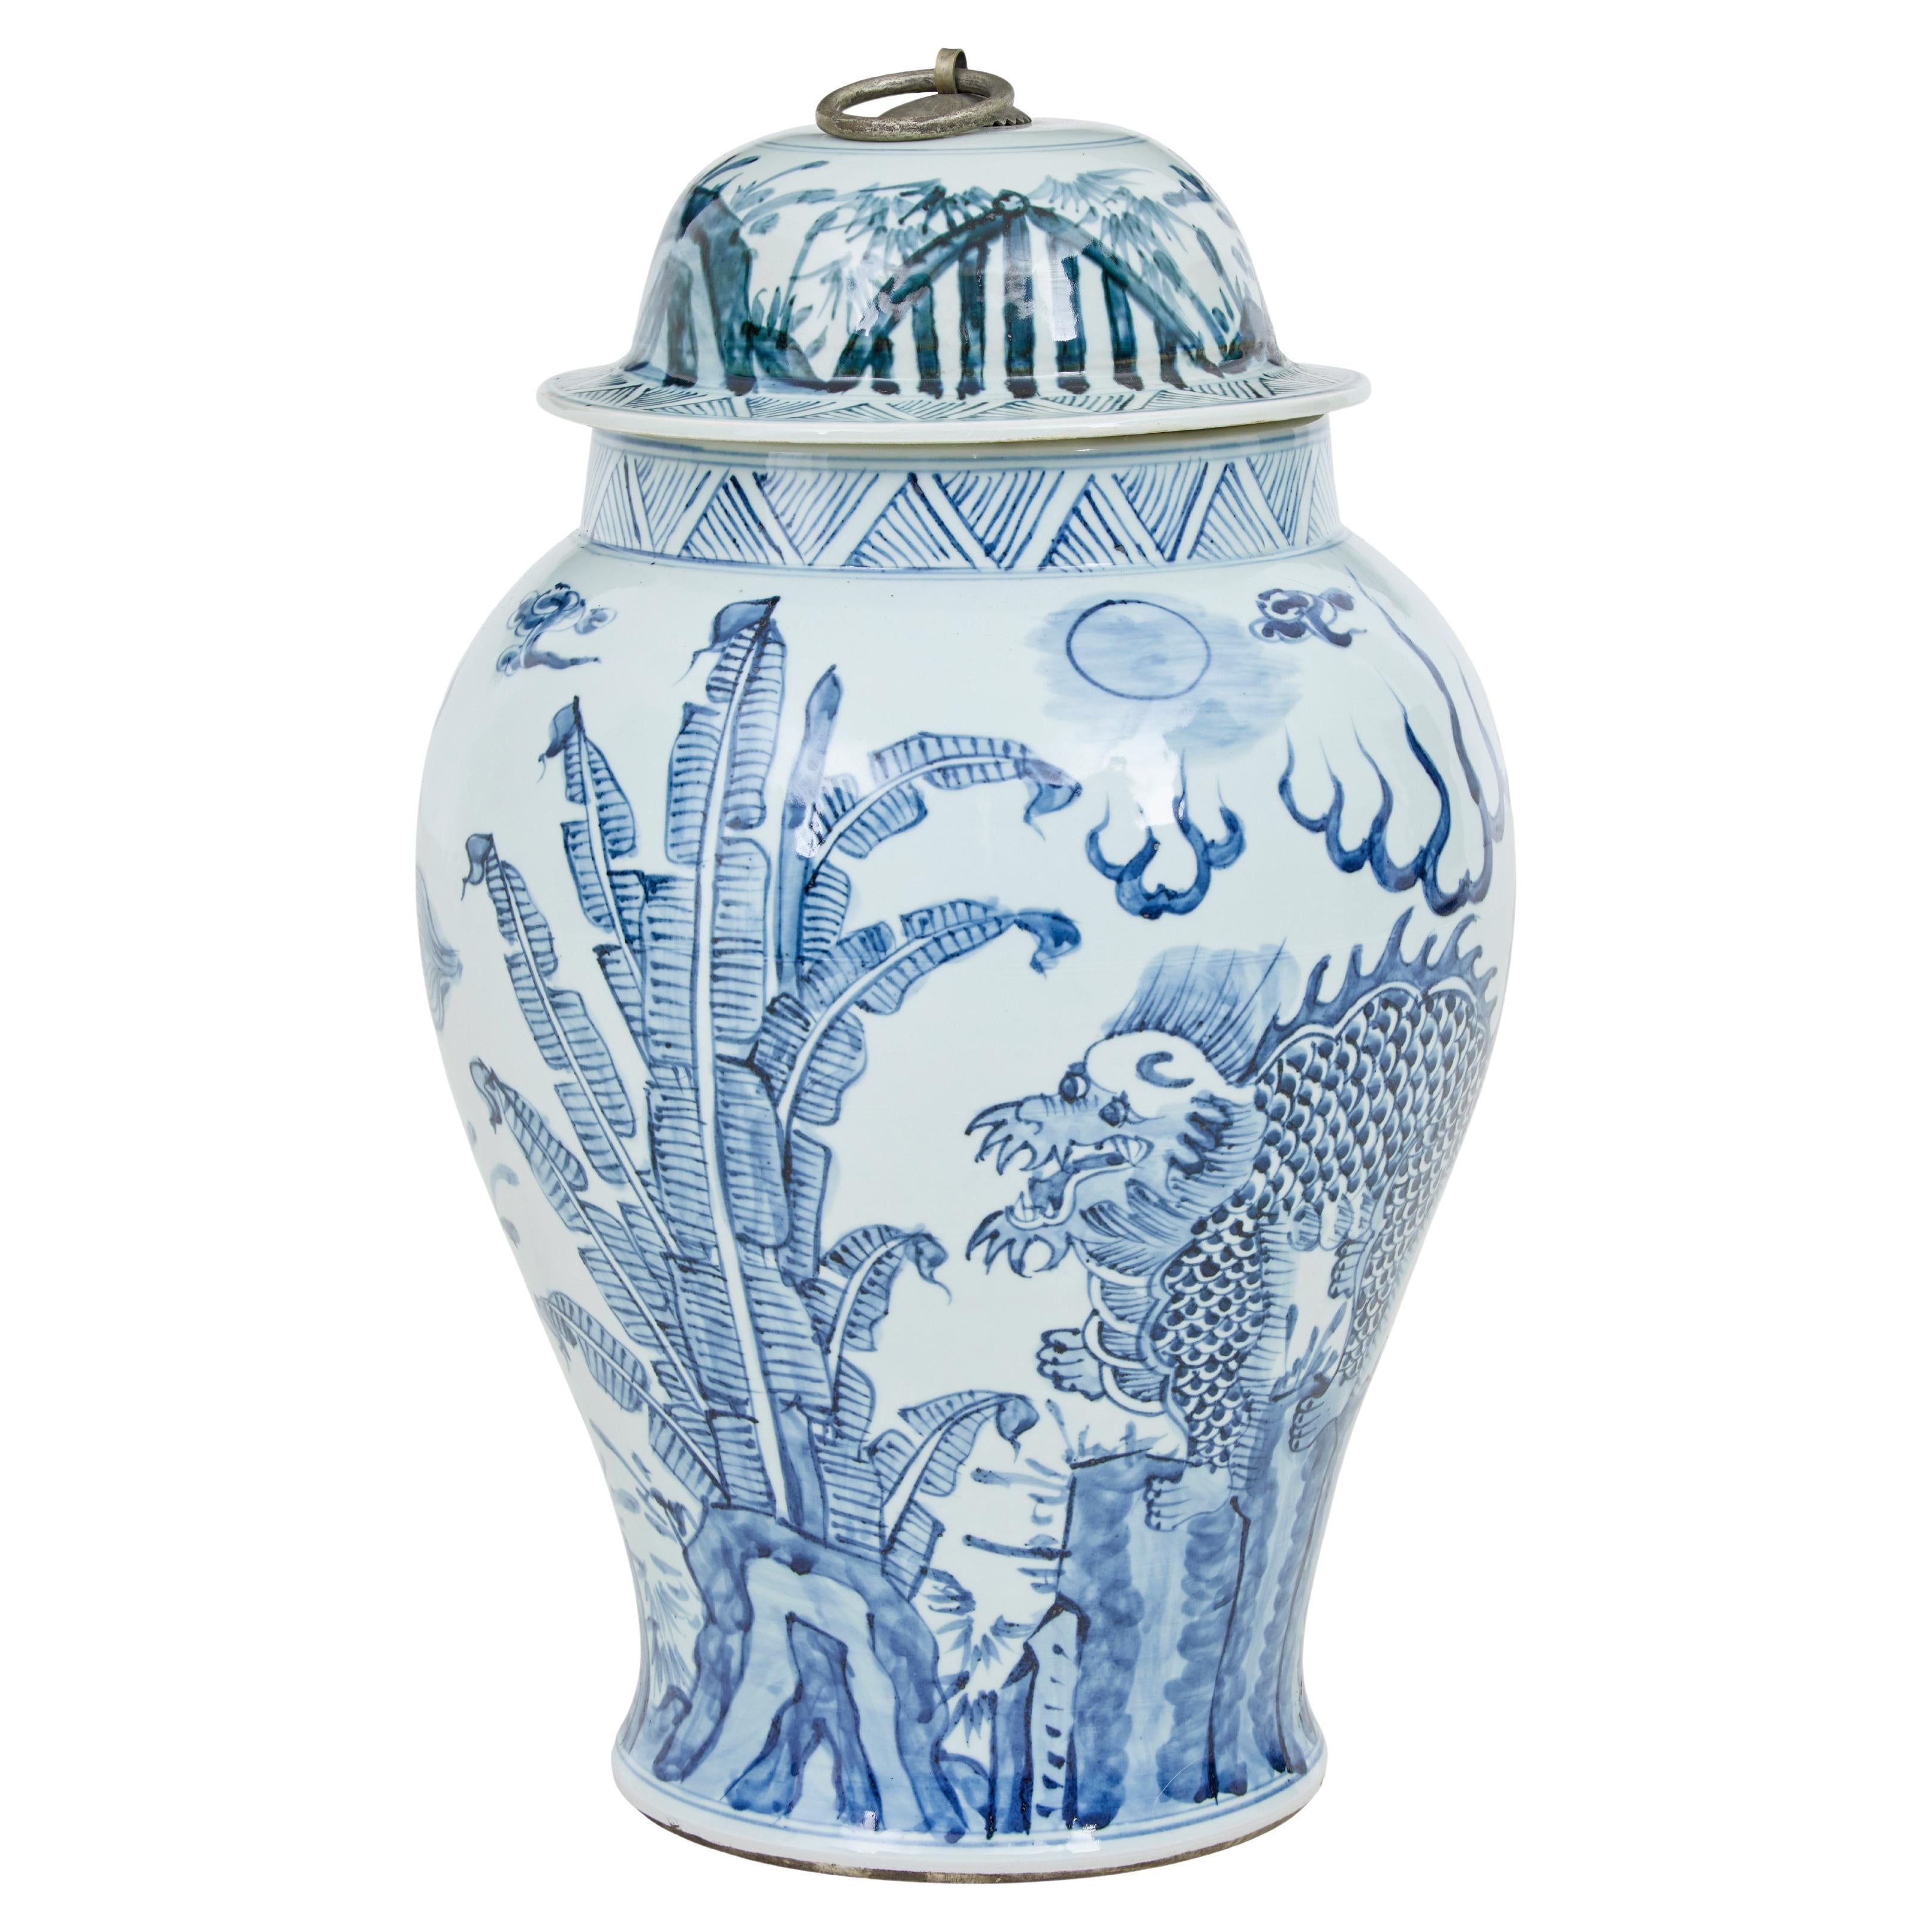 Decorative mid century ceramic ginger jar